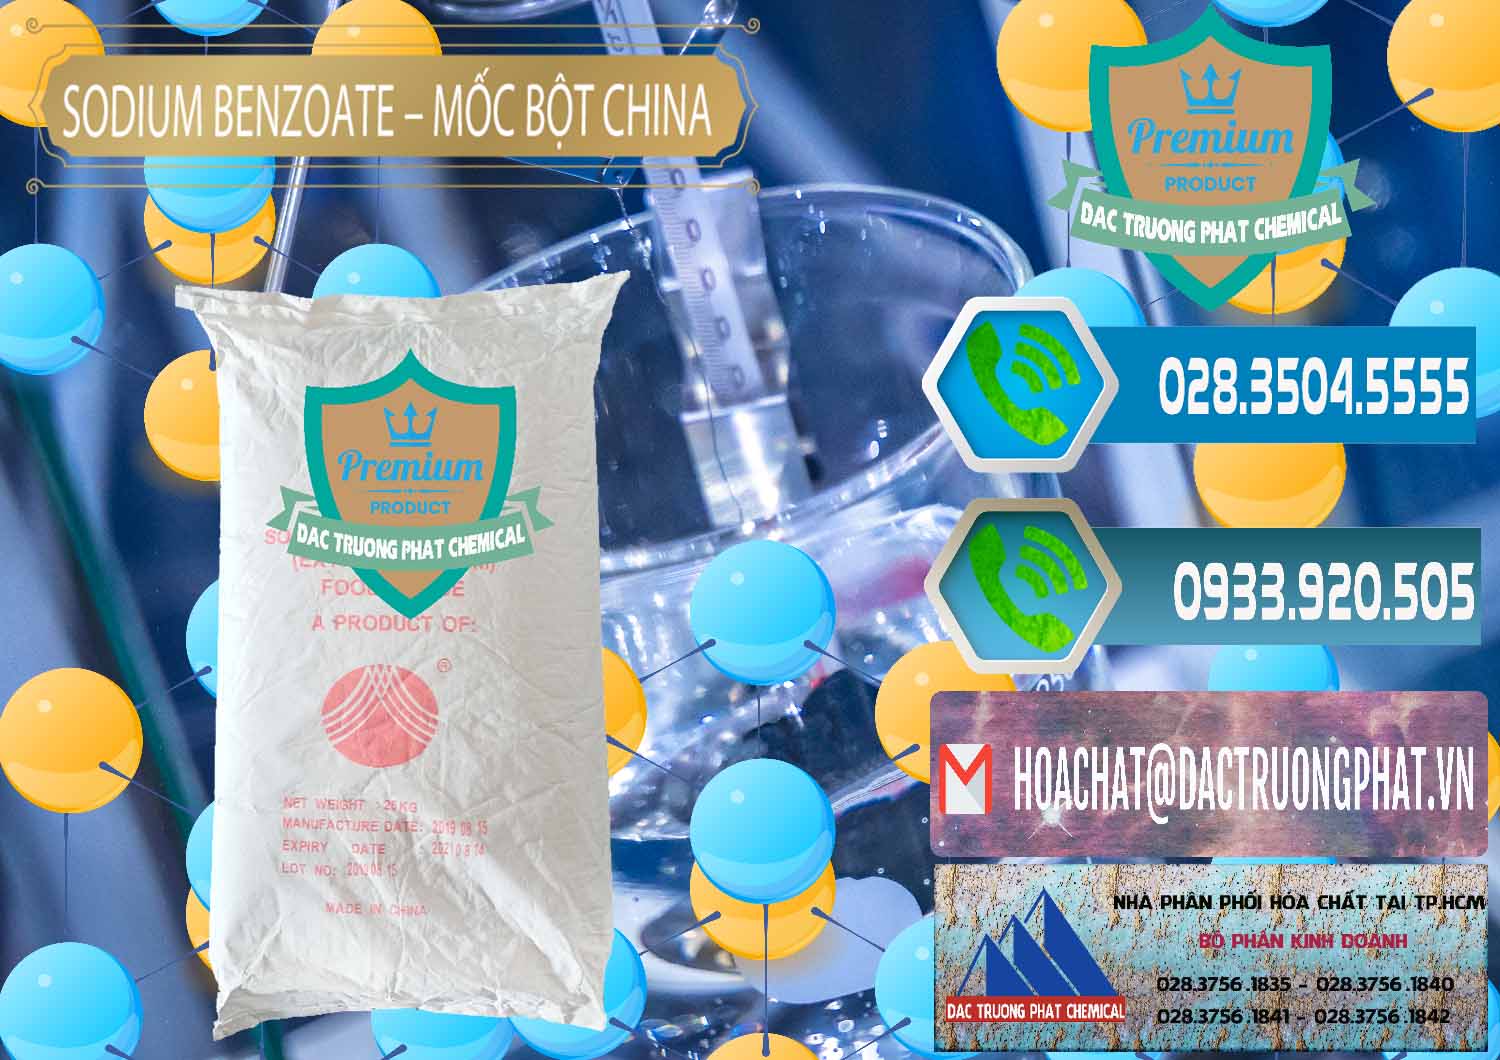 Nơi bán & cung ứng Sodium Benzoate - Mốc Bột Chữ Cam Food Grade Trung Quốc China - 0135 - Cty chuyên cung cấp và kinh doanh hóa chất tại TP.HCM - congtyhoachat.net